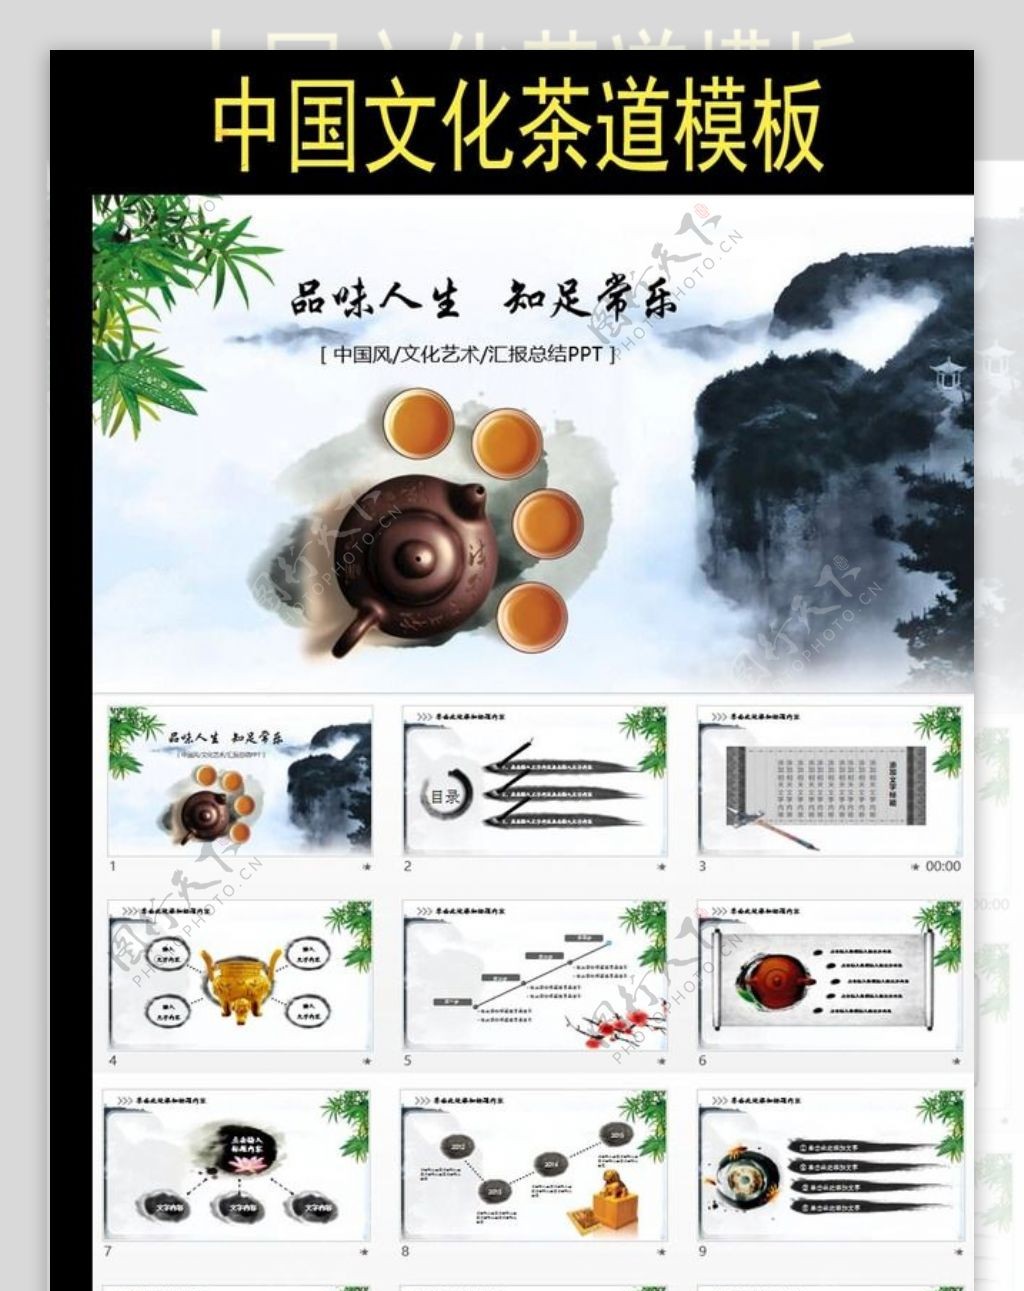 中国风茶道展示茶文化茶馆PPT